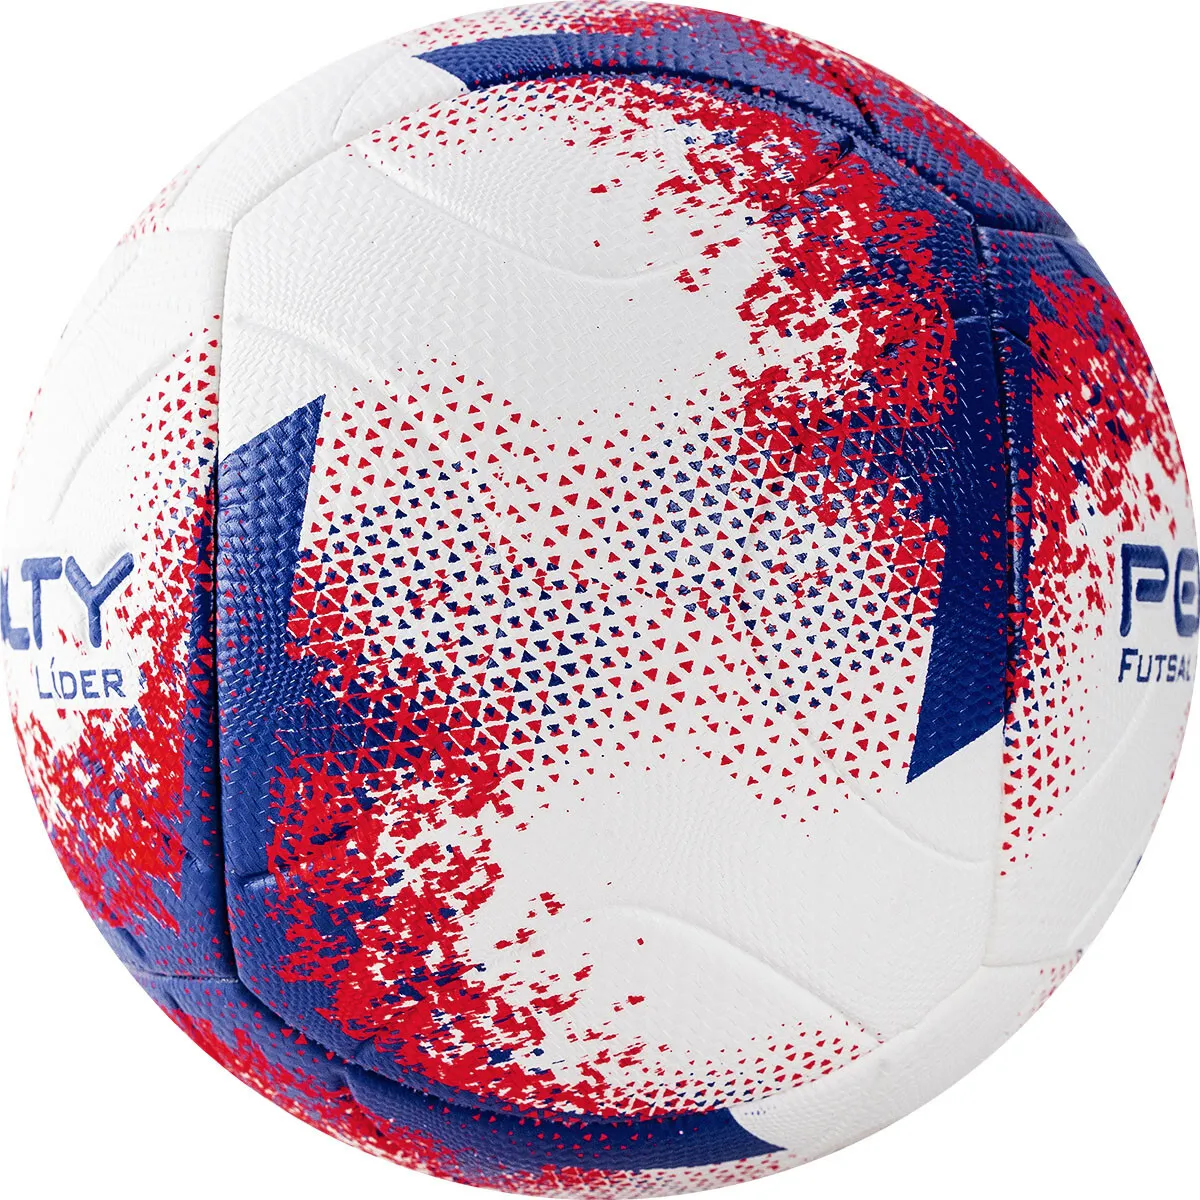 Фото Мяч футзальный Penalty Futsal 500 Lider XXI №4 бело-сине-красный 5213061641-U со склада магазина СпортЕВ